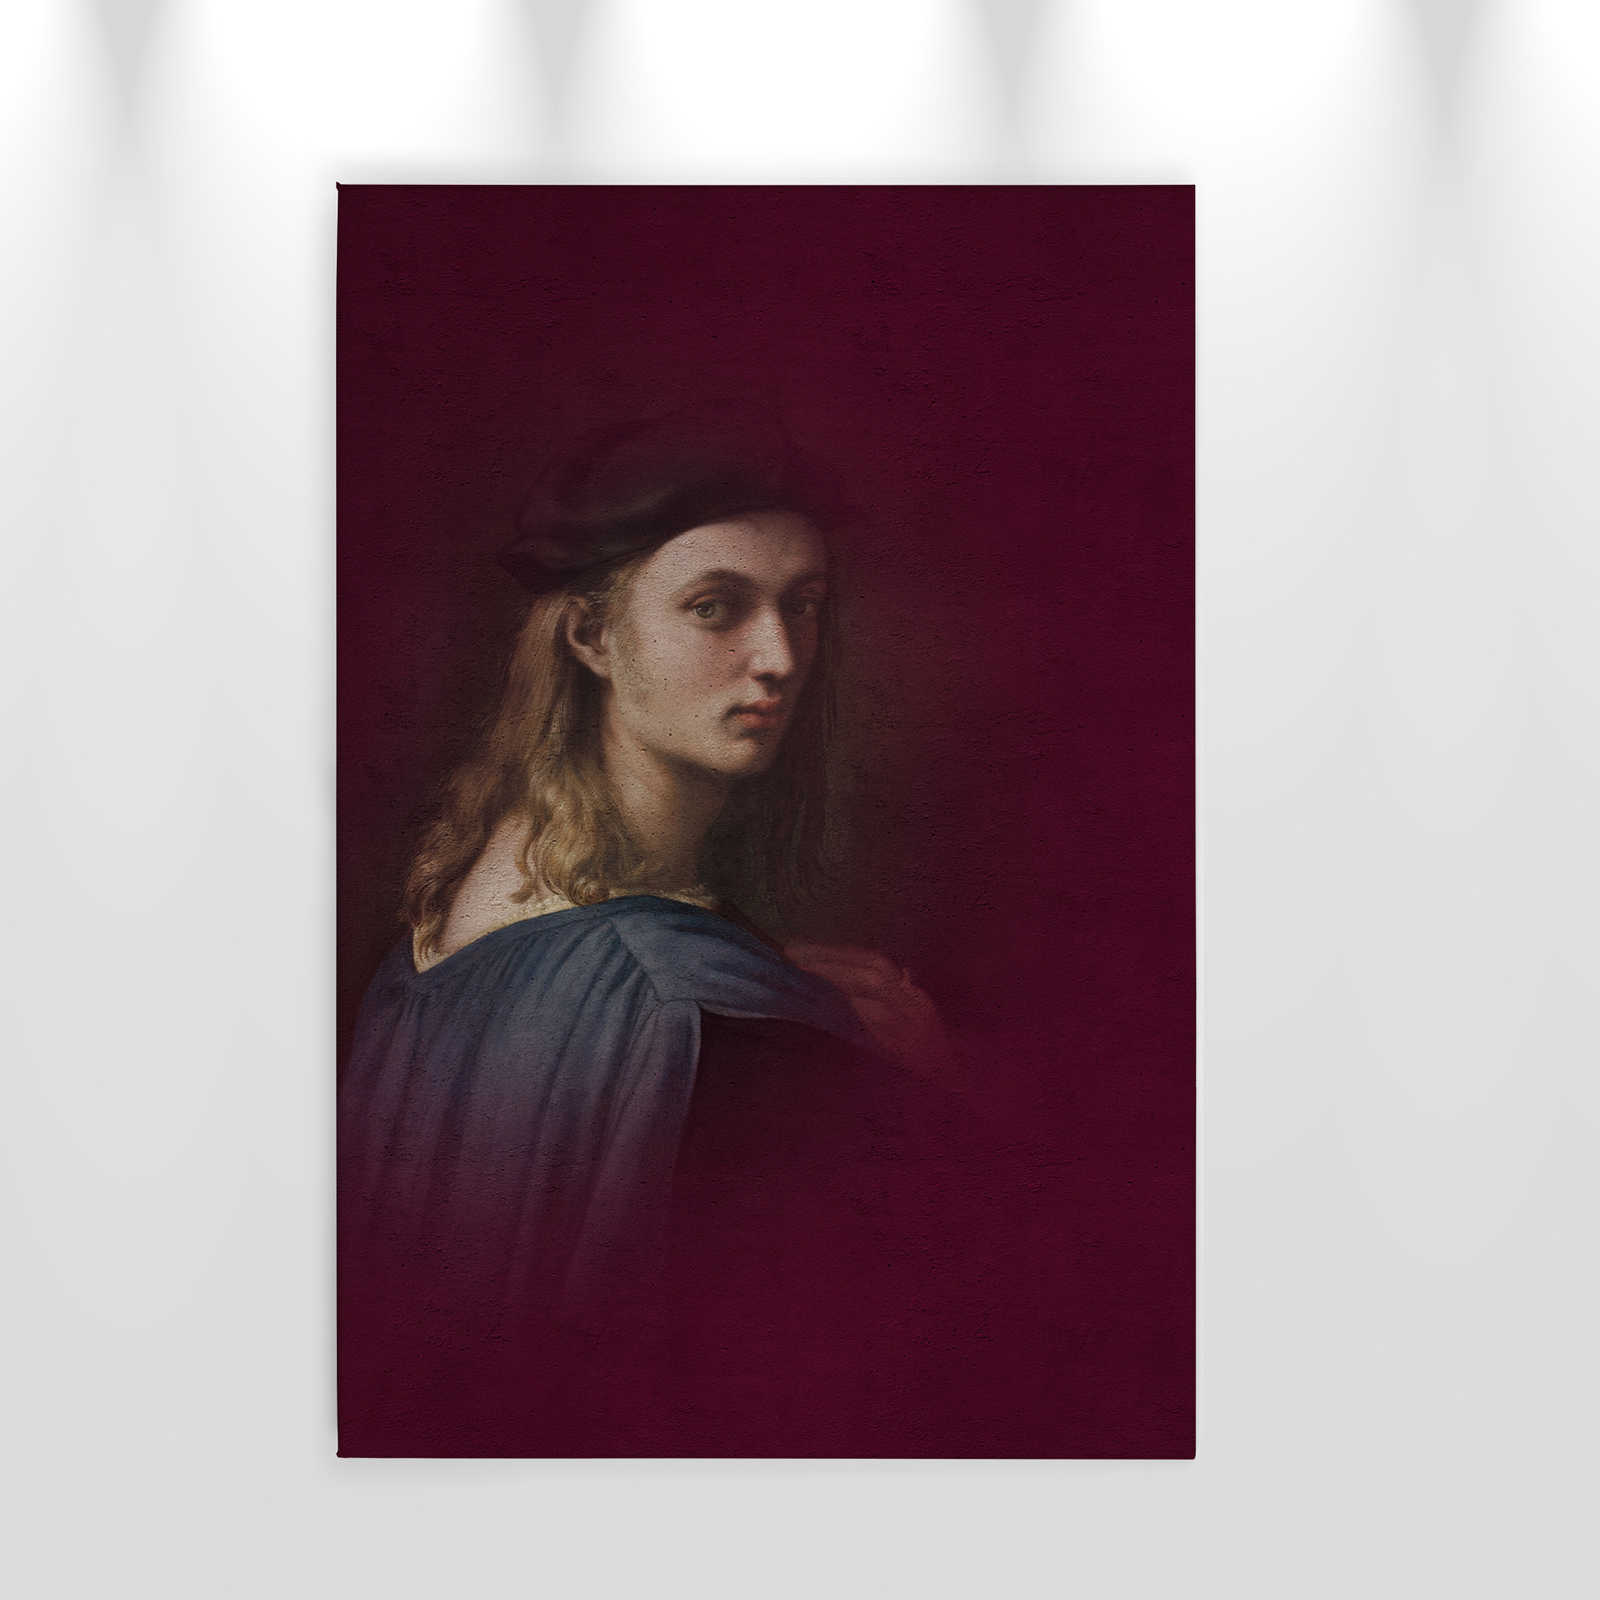             Toile classique Portrait jeune homme - 0,60 m x 0,90 m
        